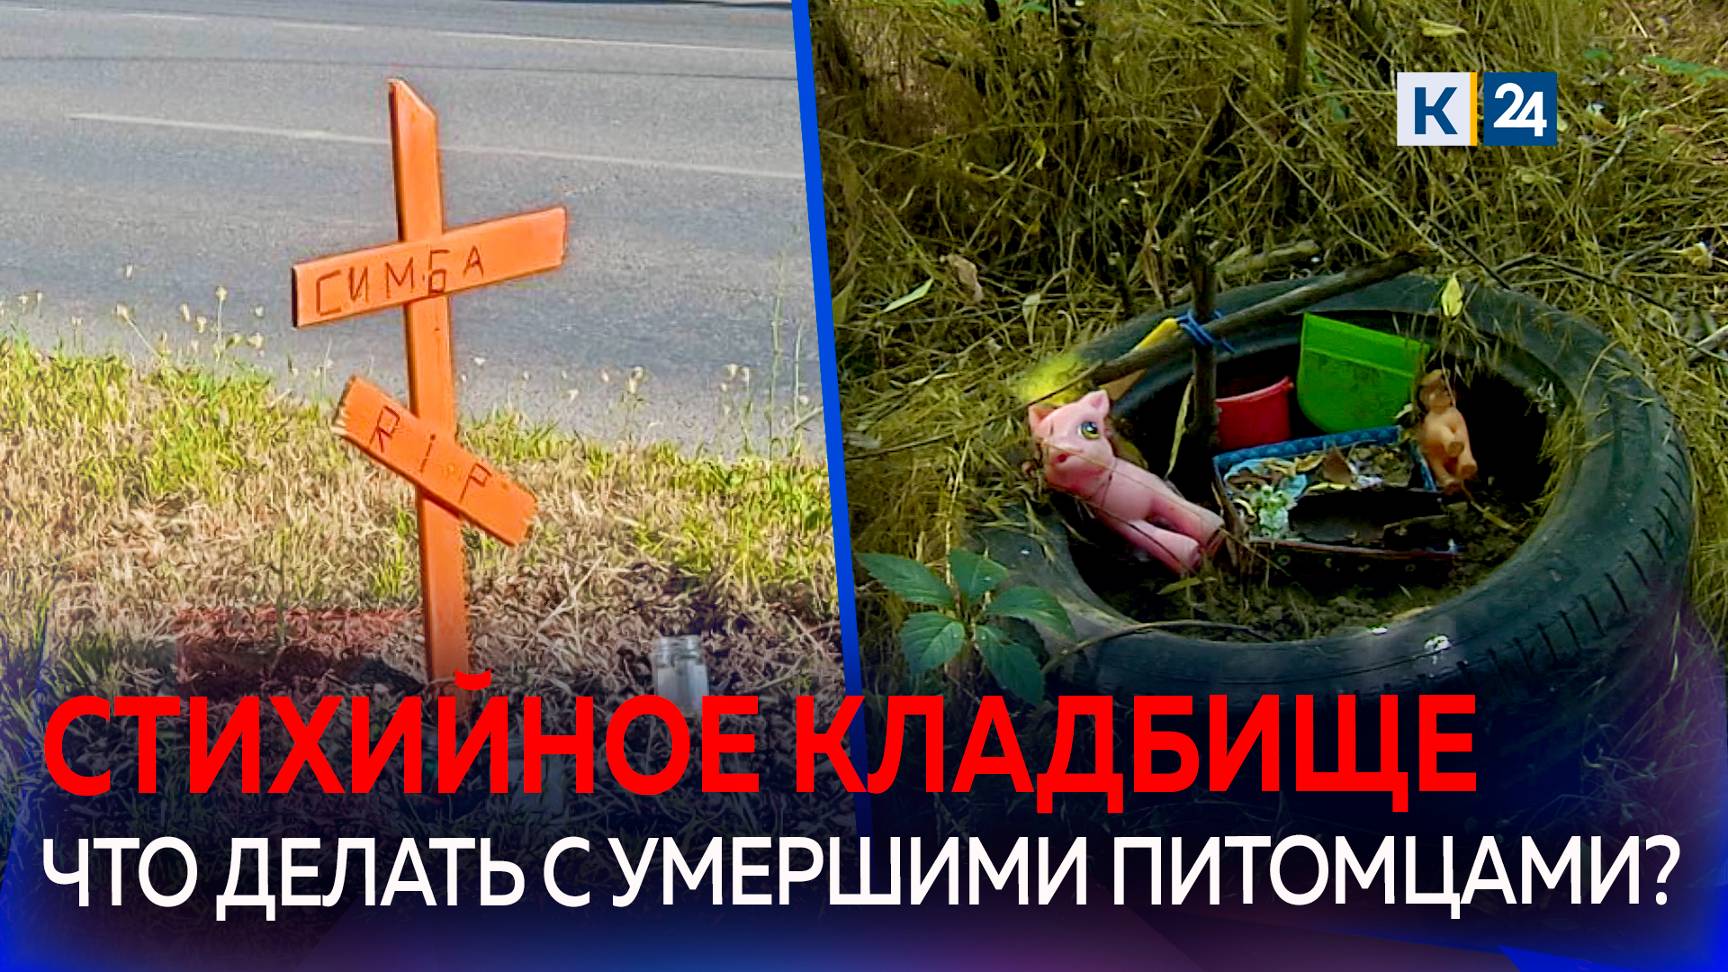 Неизвестные устроили в центре Краснодара похороны для домашнего питомца